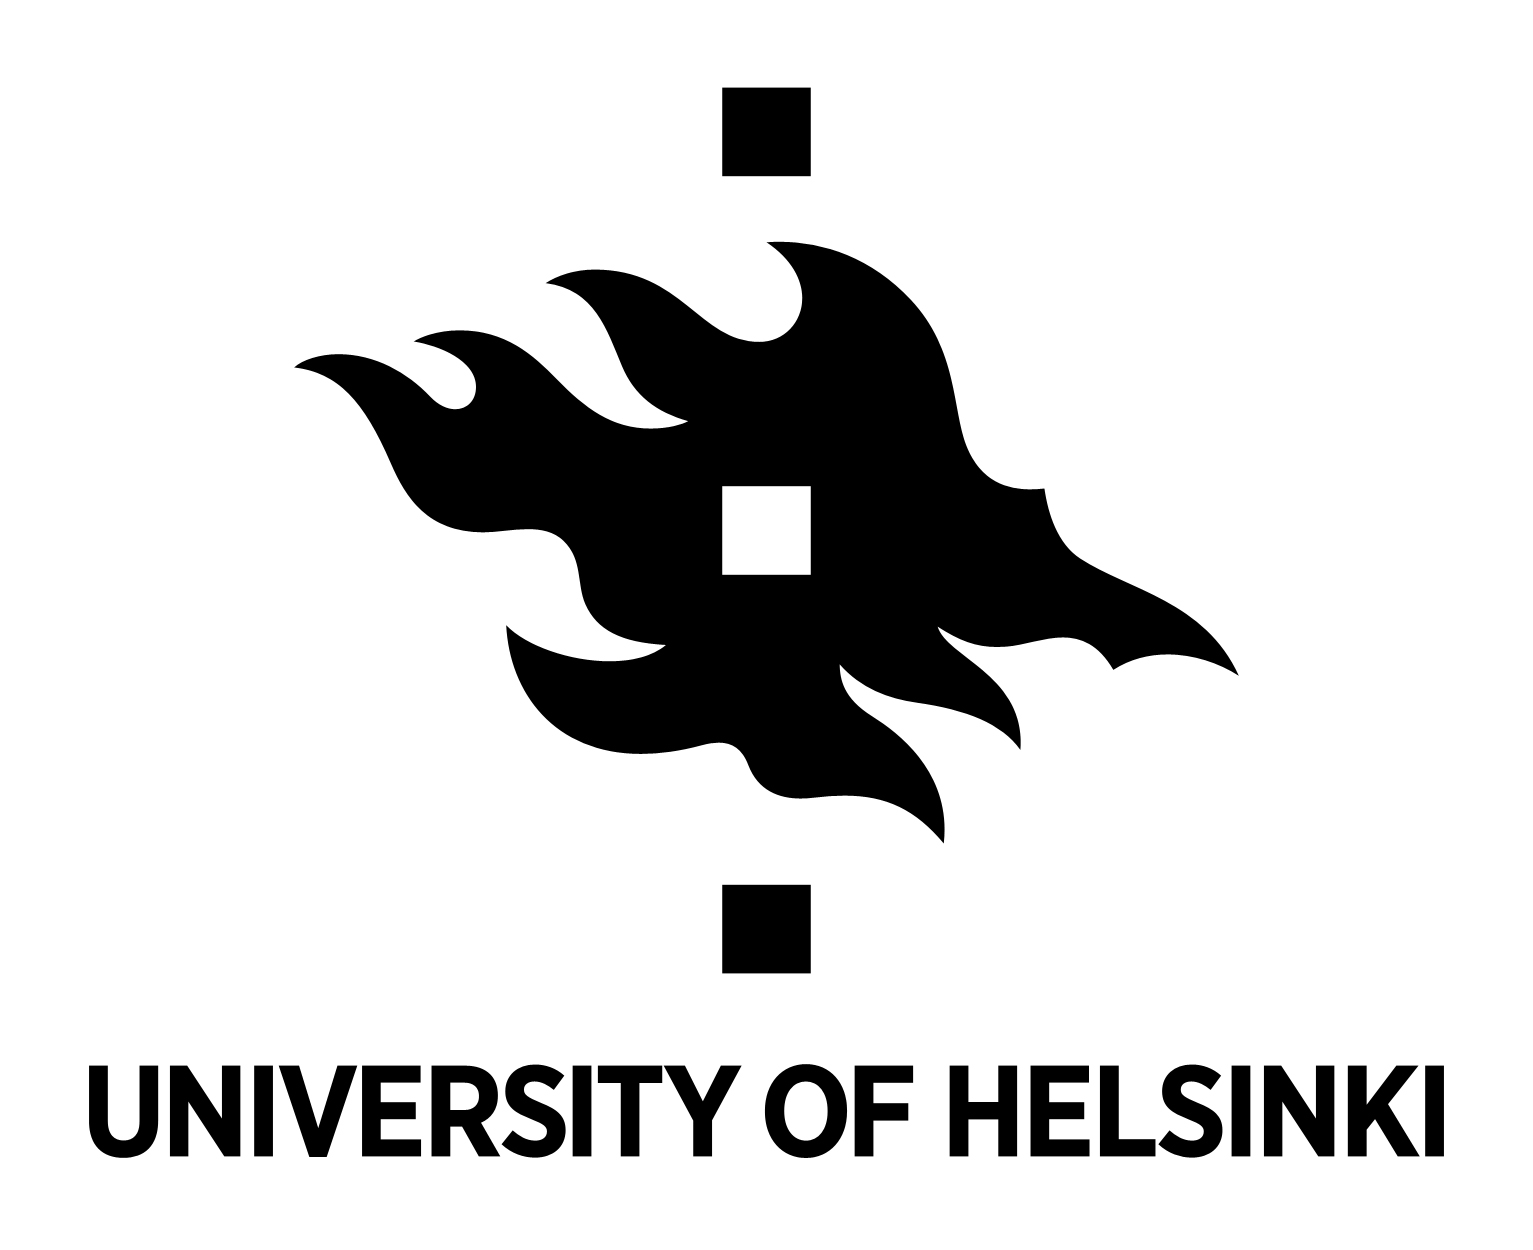 Swedish-Speaking Professor or Assistant/Associate Professor in Computer Science